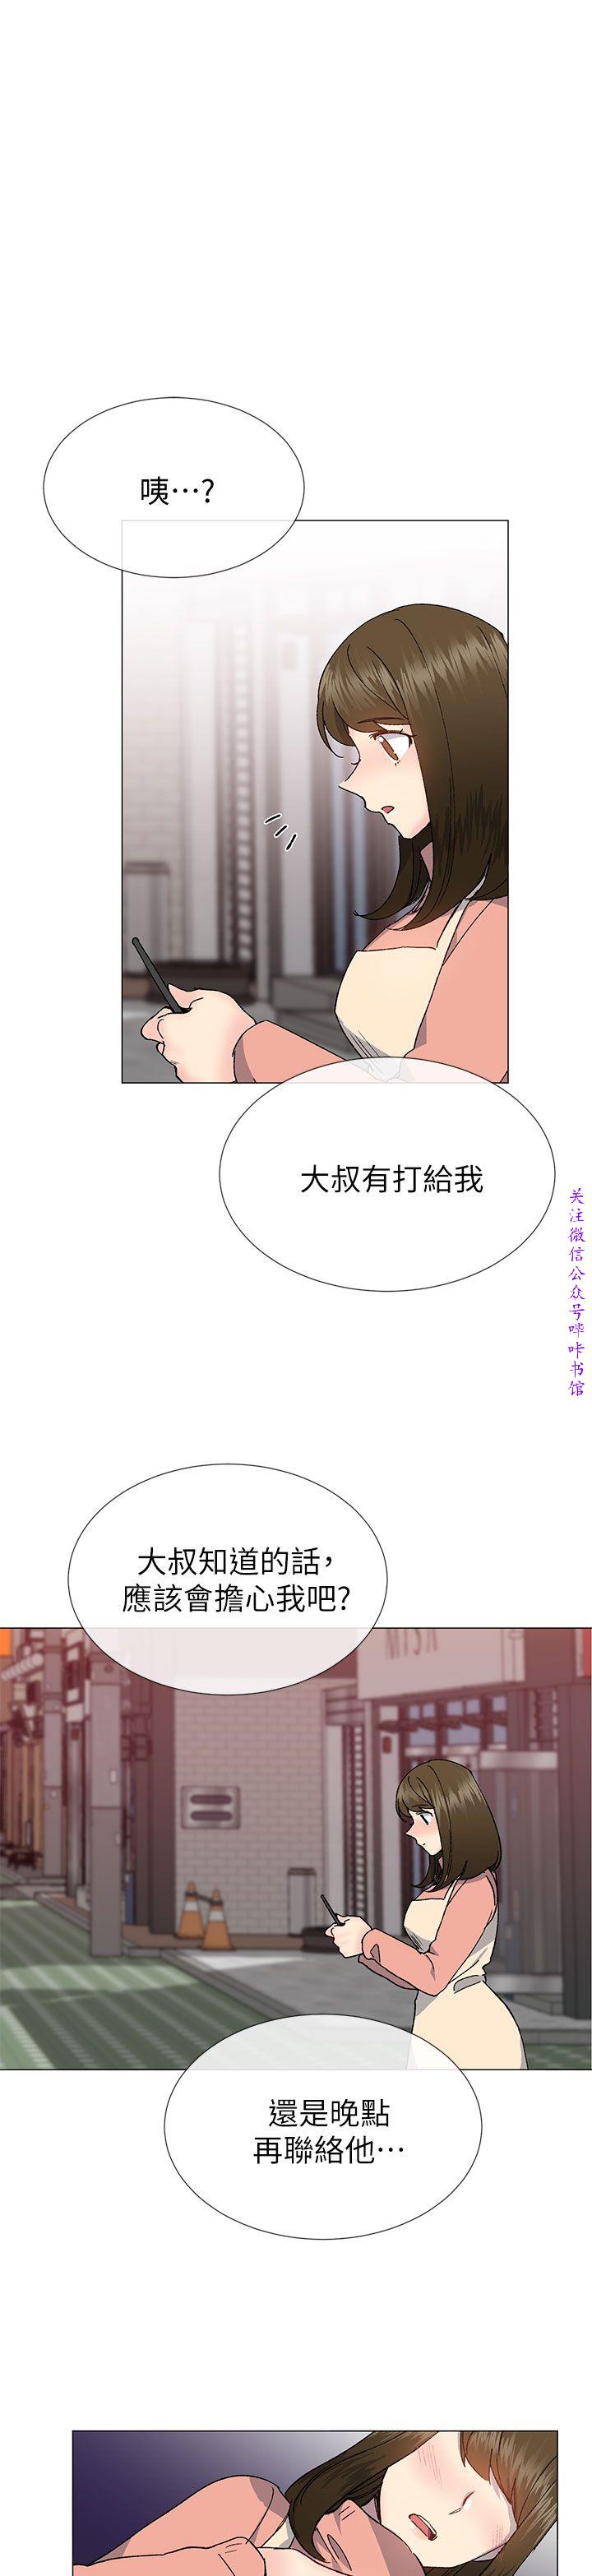 小一轮的纯爱女孩（36-40）【完结】 page 2 full